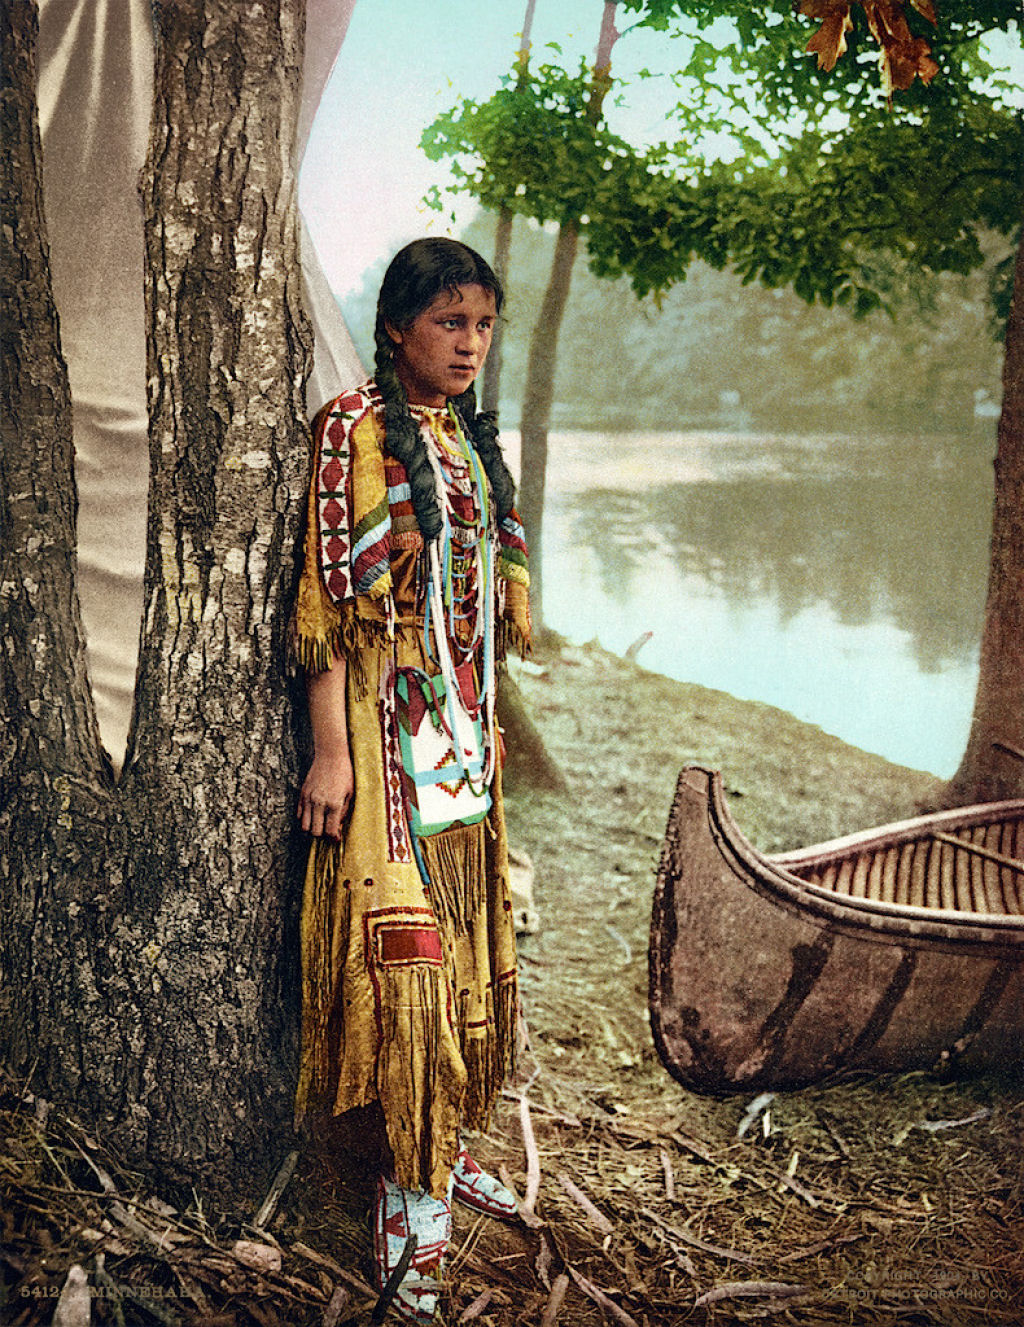 Impressionantes fotos históricas coloridas de nativos americanos do final do século 19 e início do século 20 04